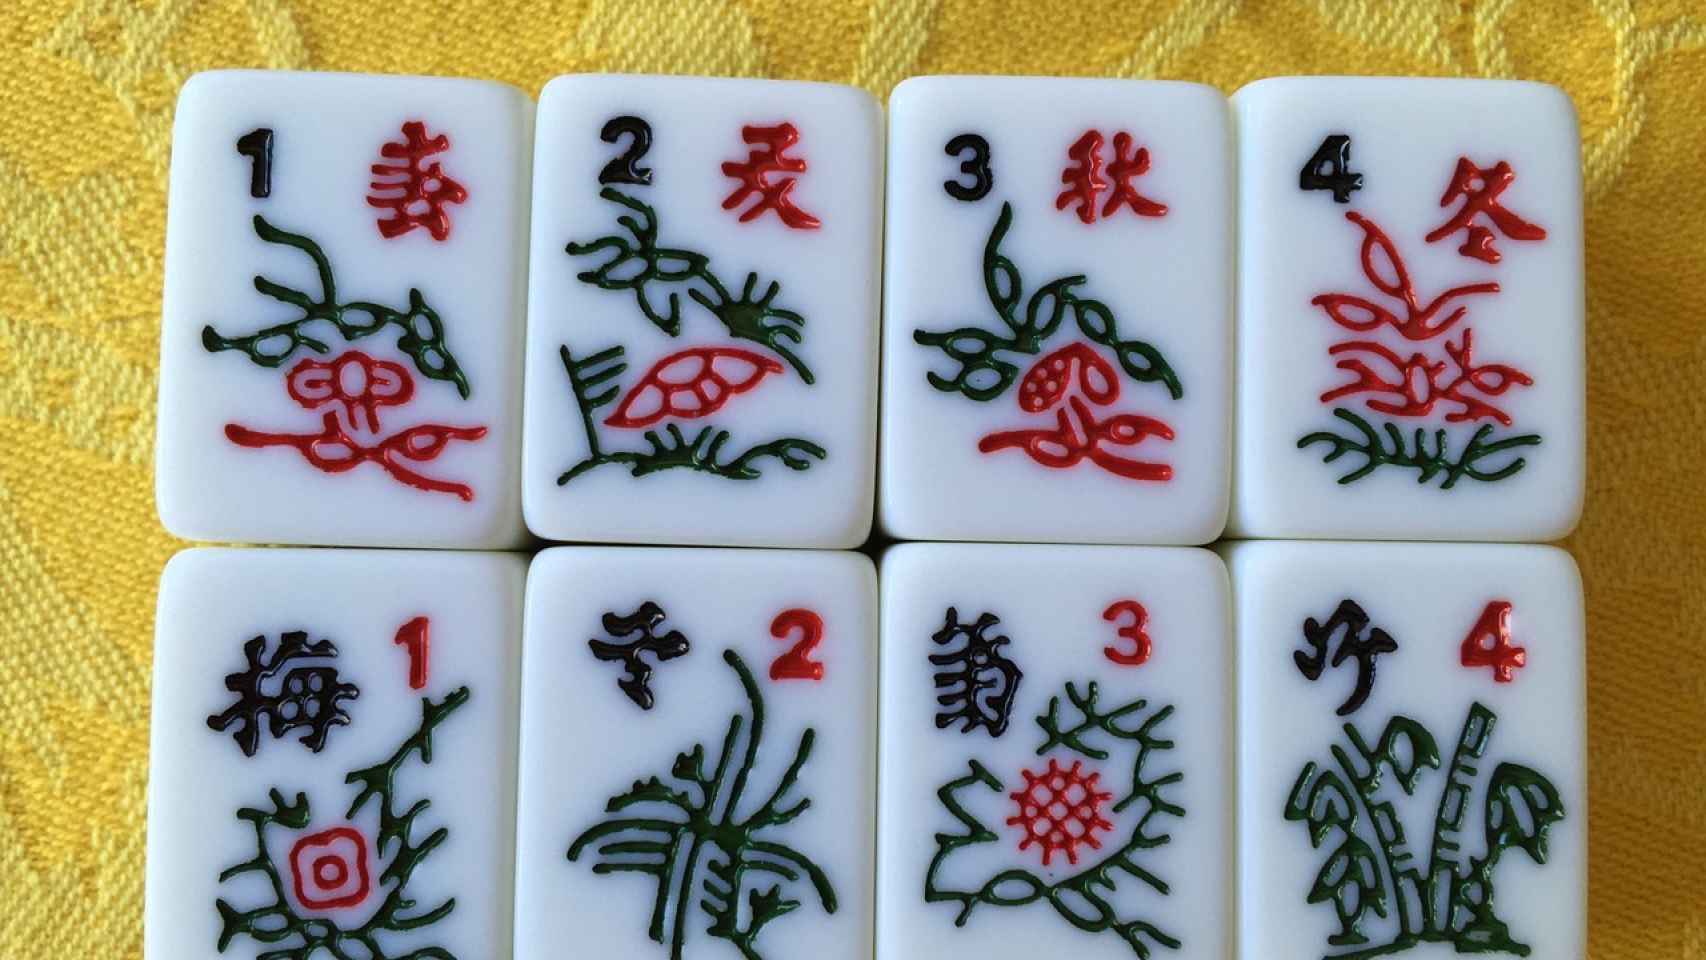 Juego de mesa impermeable Mahjong para padres, familiares y